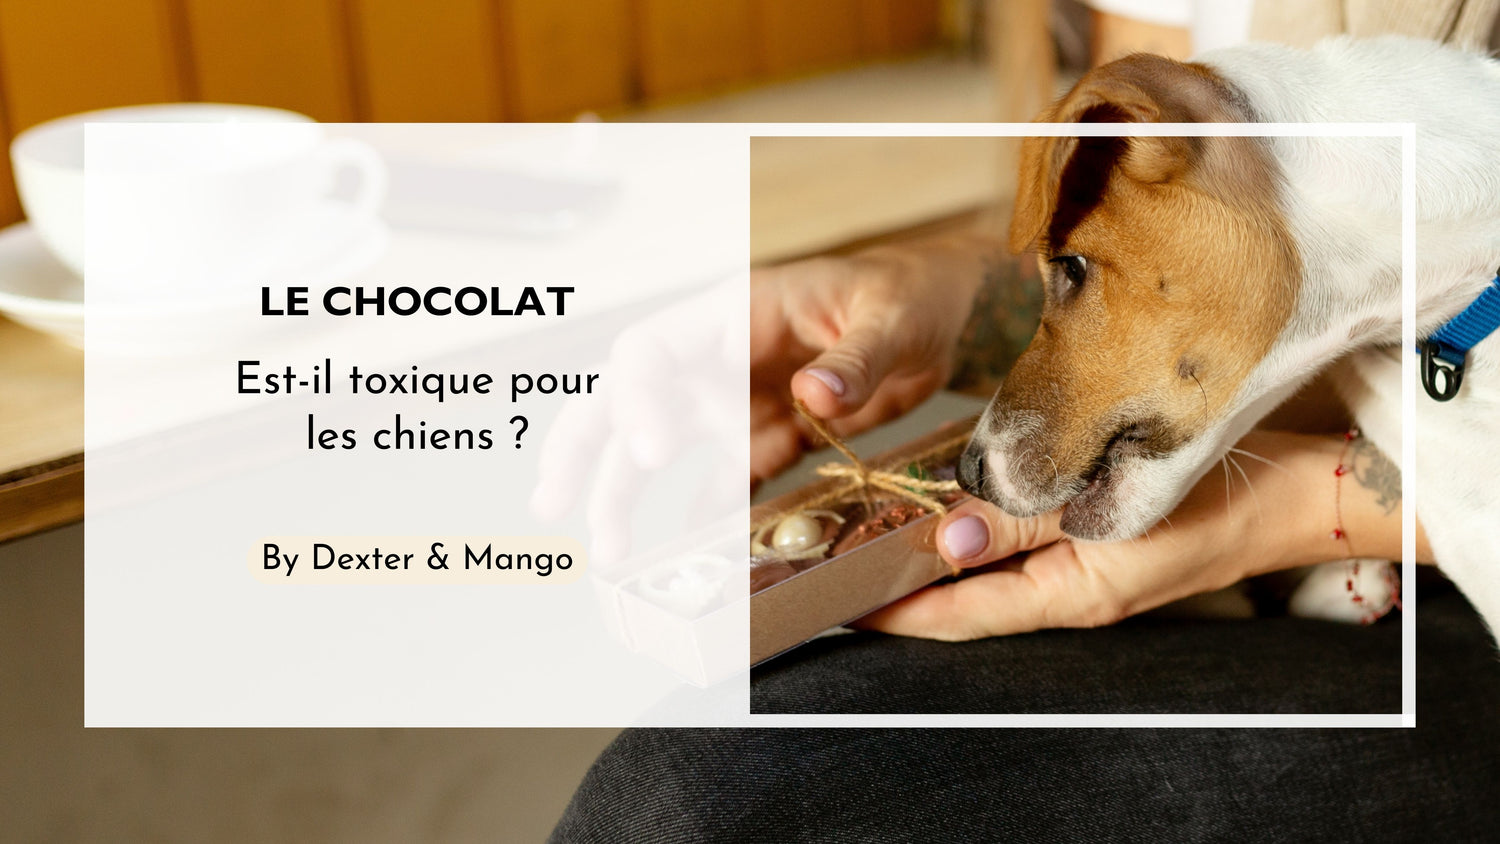 Mon chien a mangé du chocolat : Est-ce une urgence ?